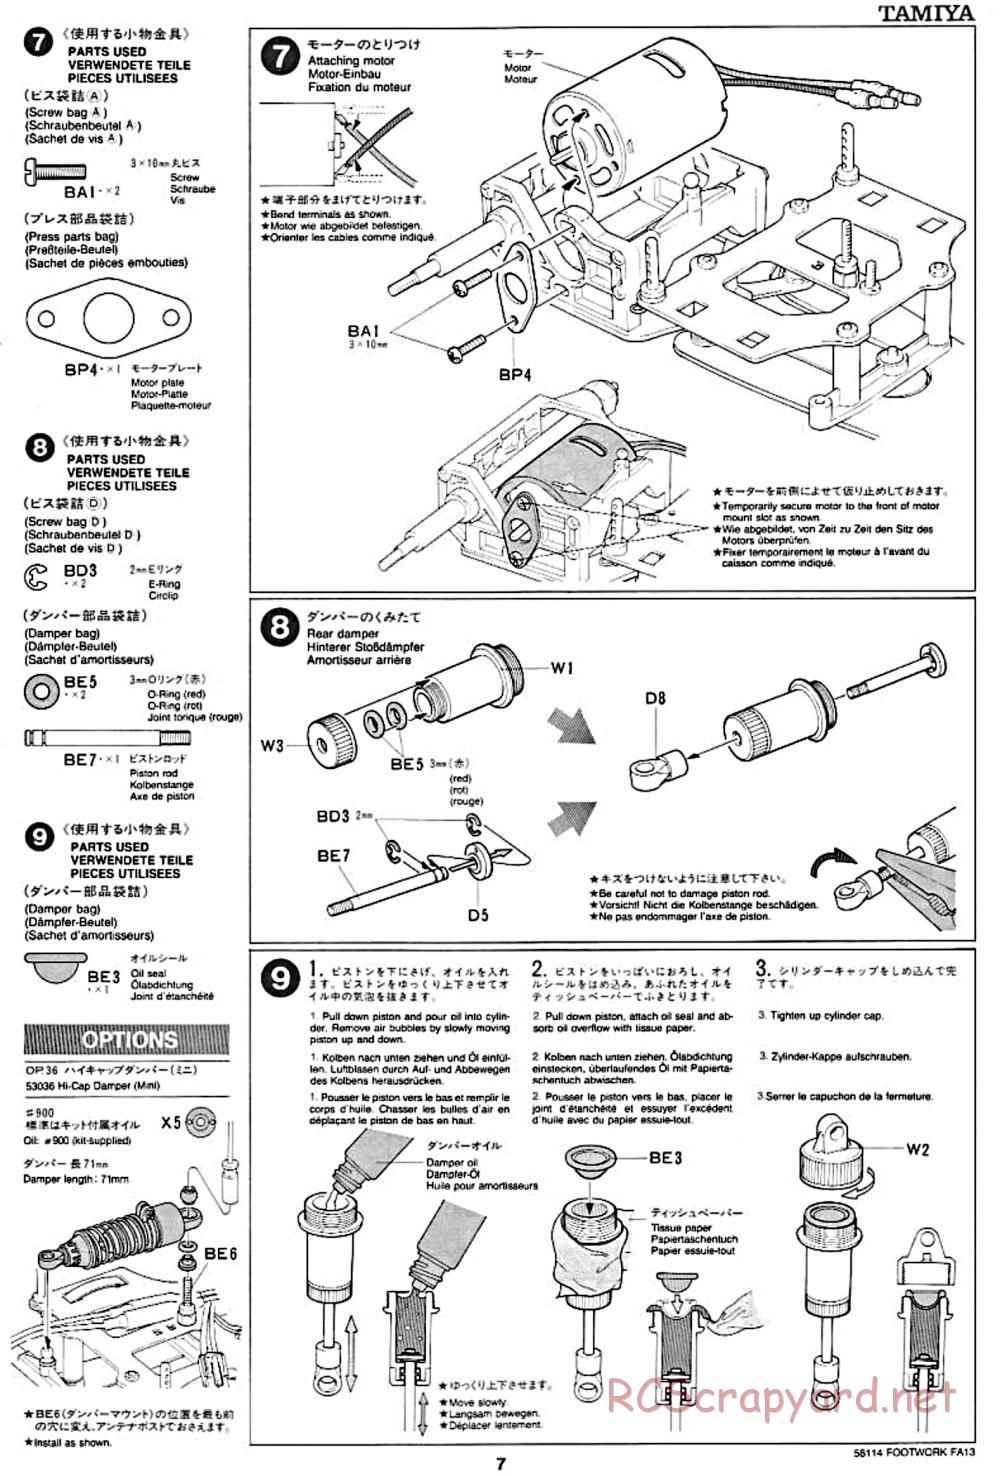 Tamiya - Footwork FA13 Mugen Honda - F102 Chassis - Manual - Page 7